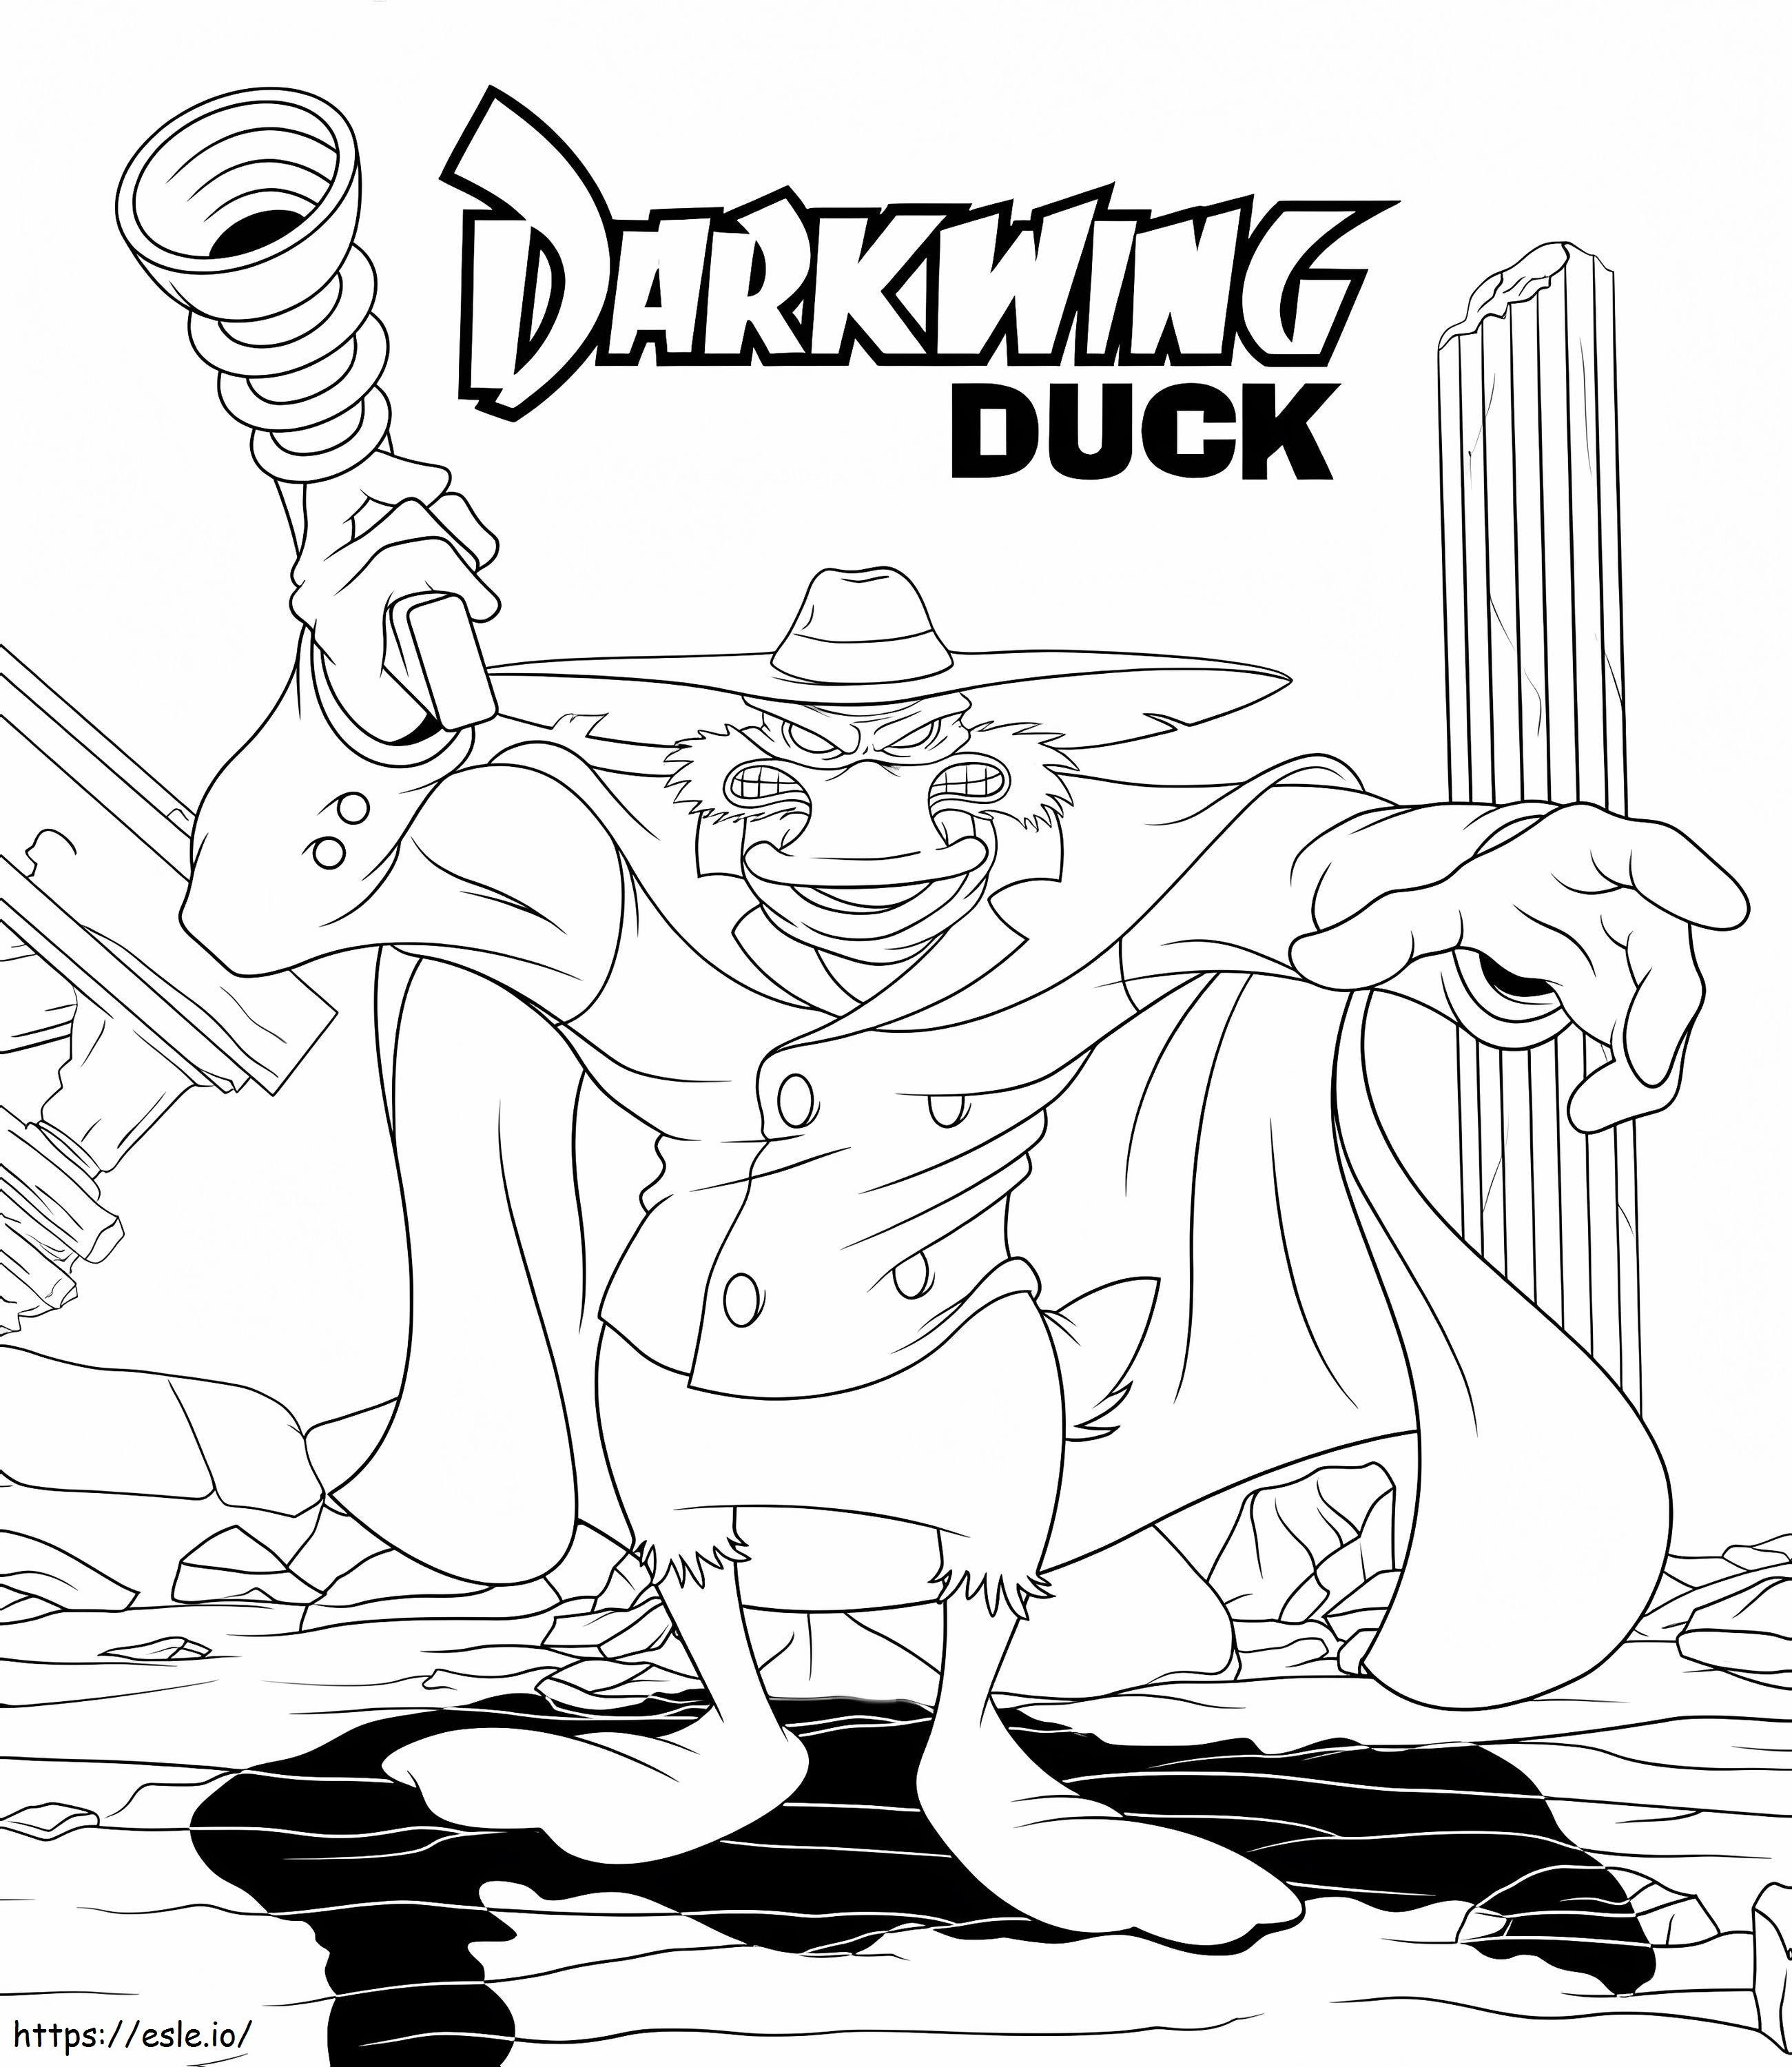 Darkwing-Ente 1 ausmalbilder